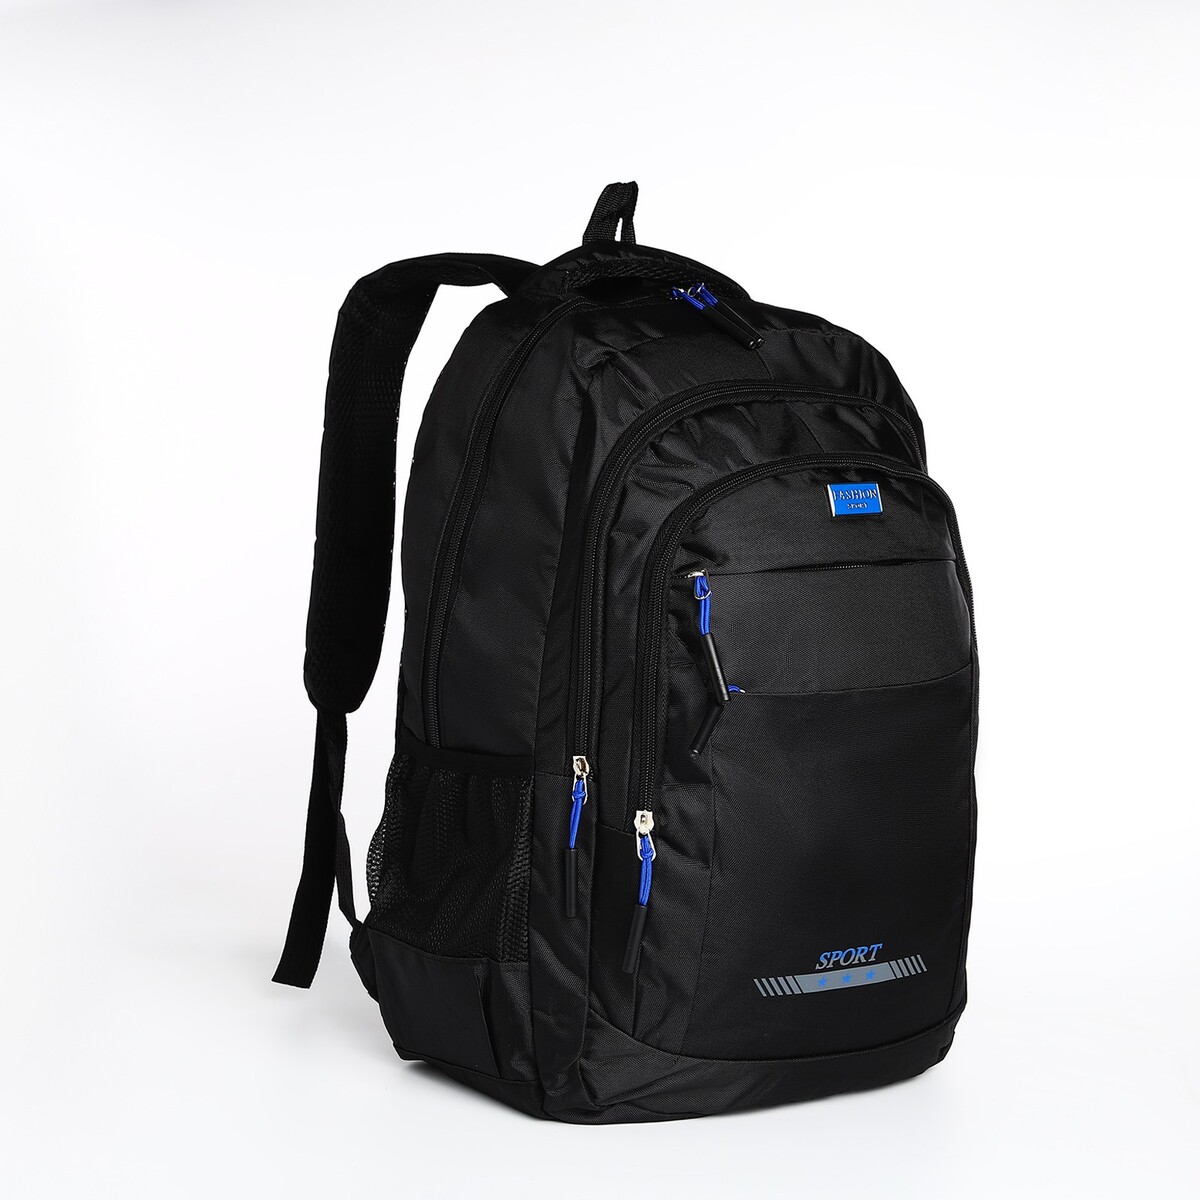 Рюкзак мужской на молнии, 4 наружных кармана, цвет черный/синий